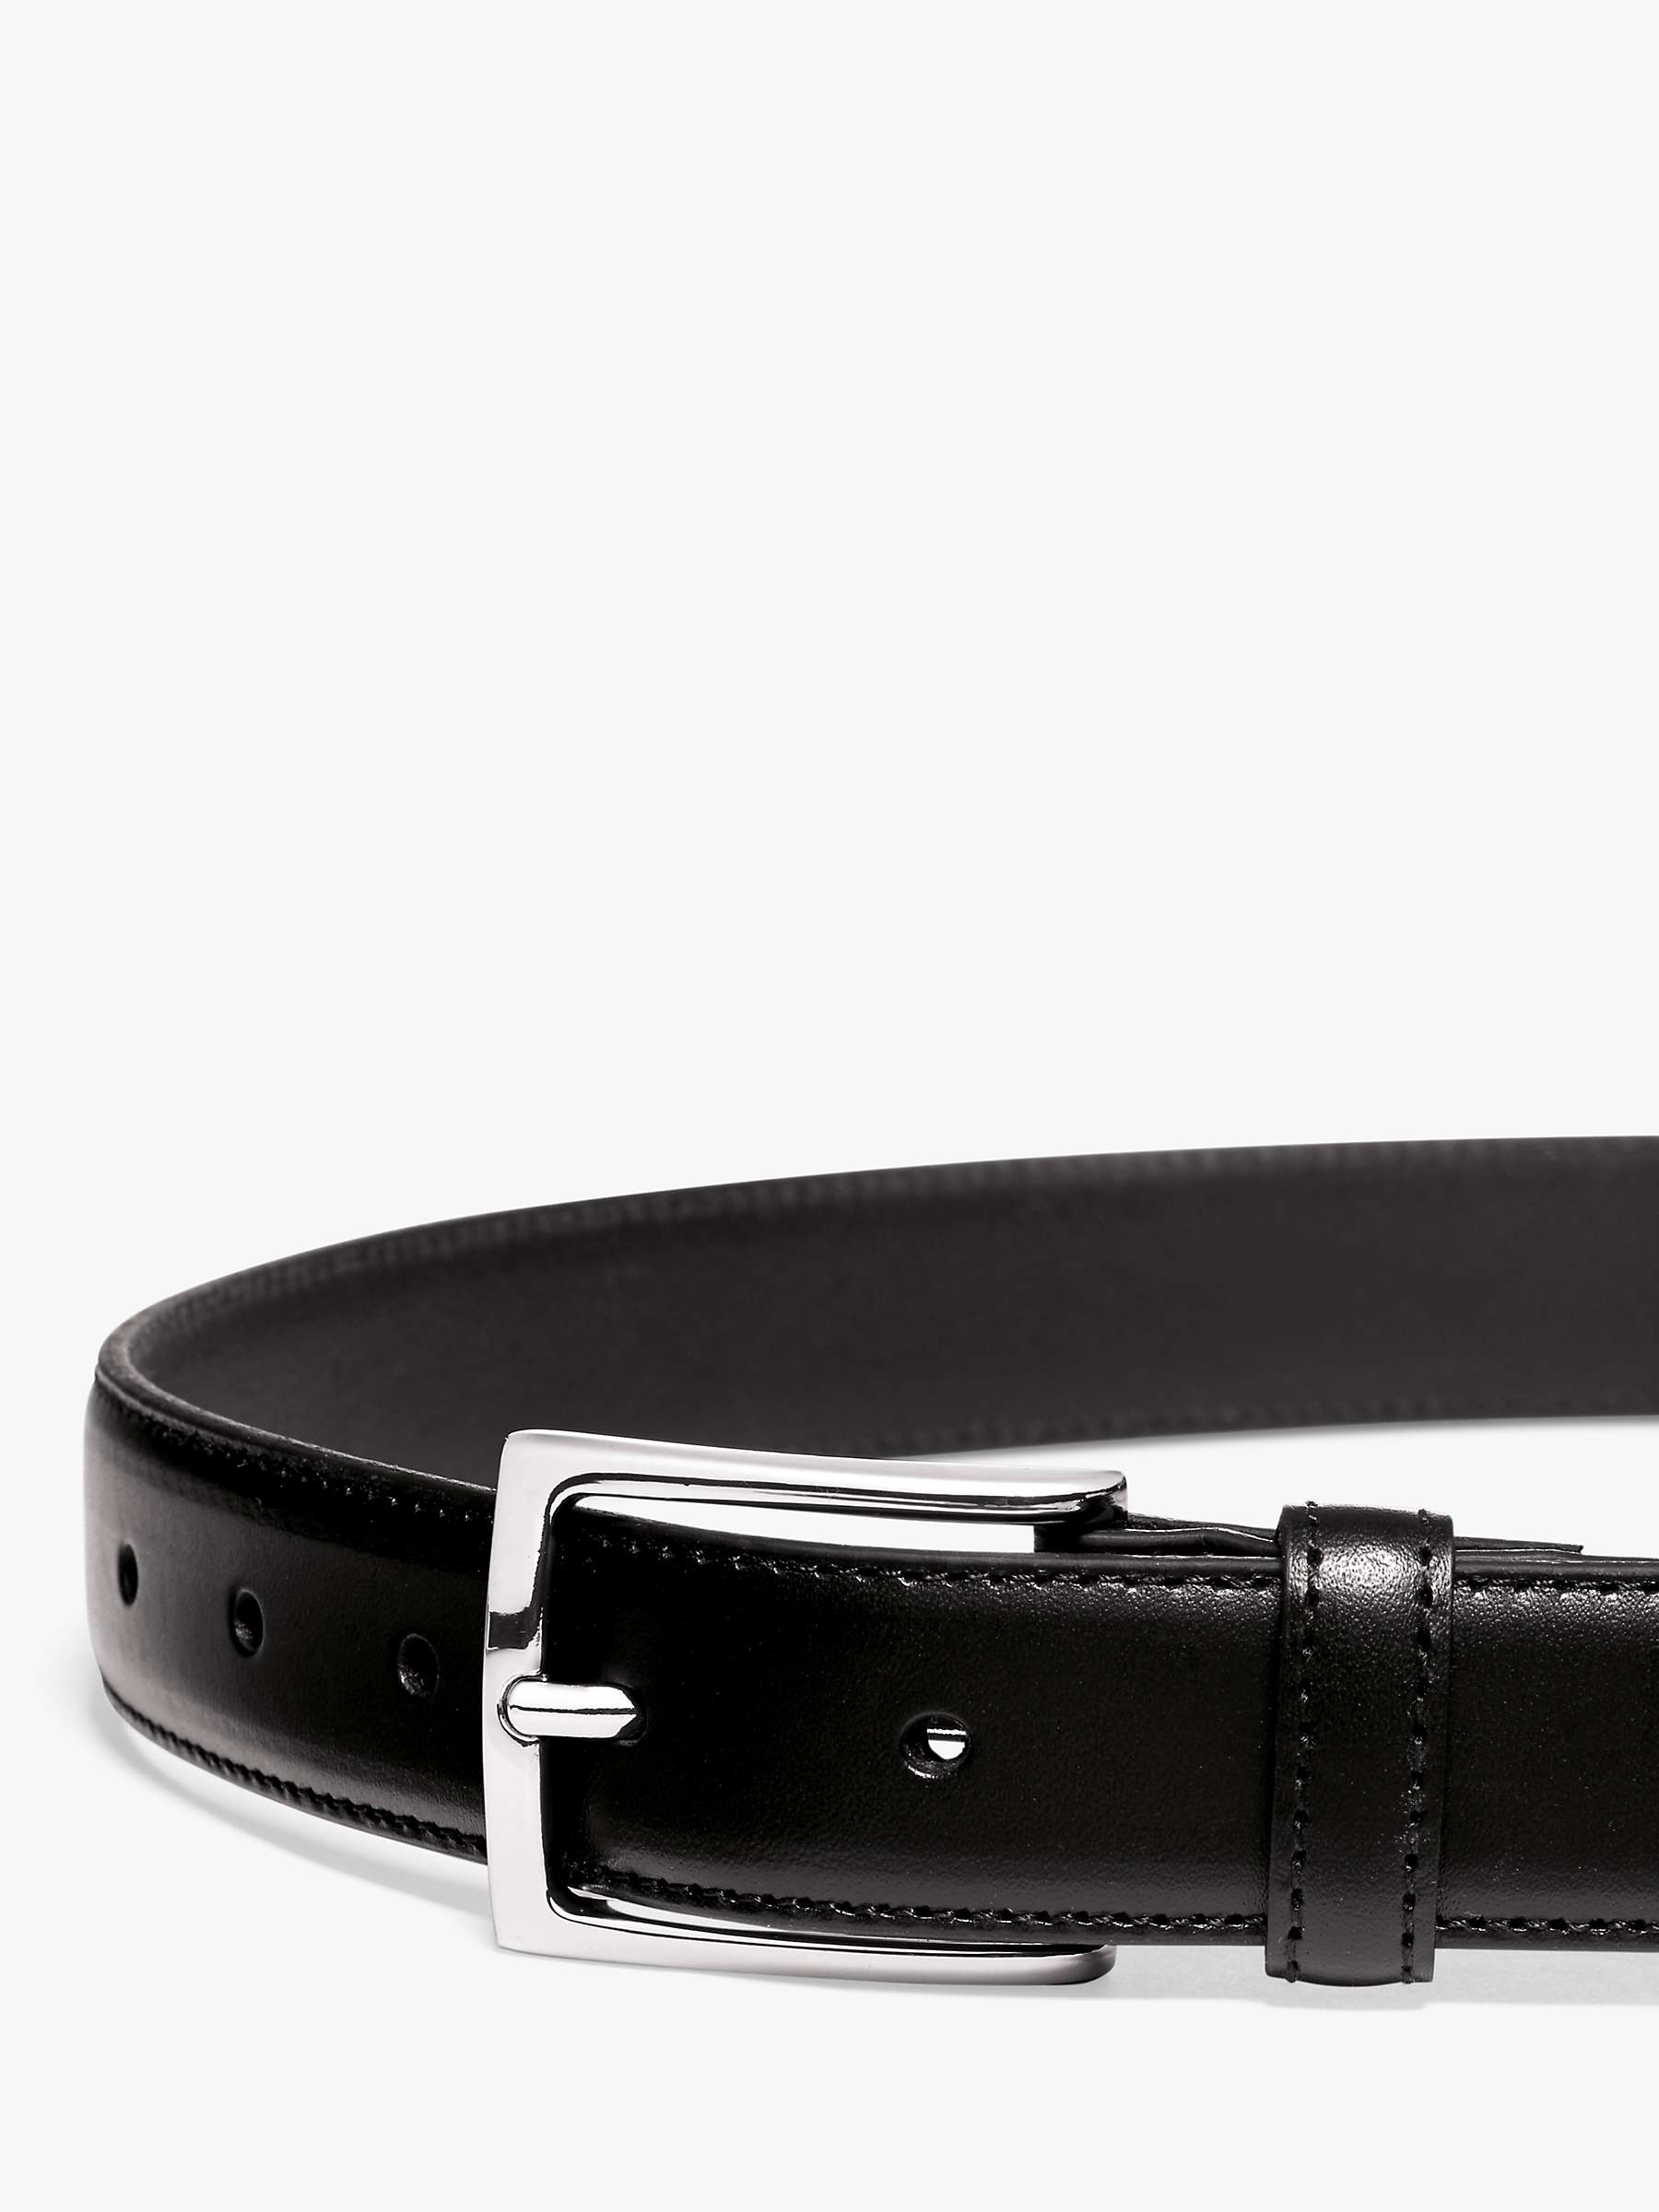 Buy Charles Tyrwhitt Formal Leather Belt Online at johnlewis.com